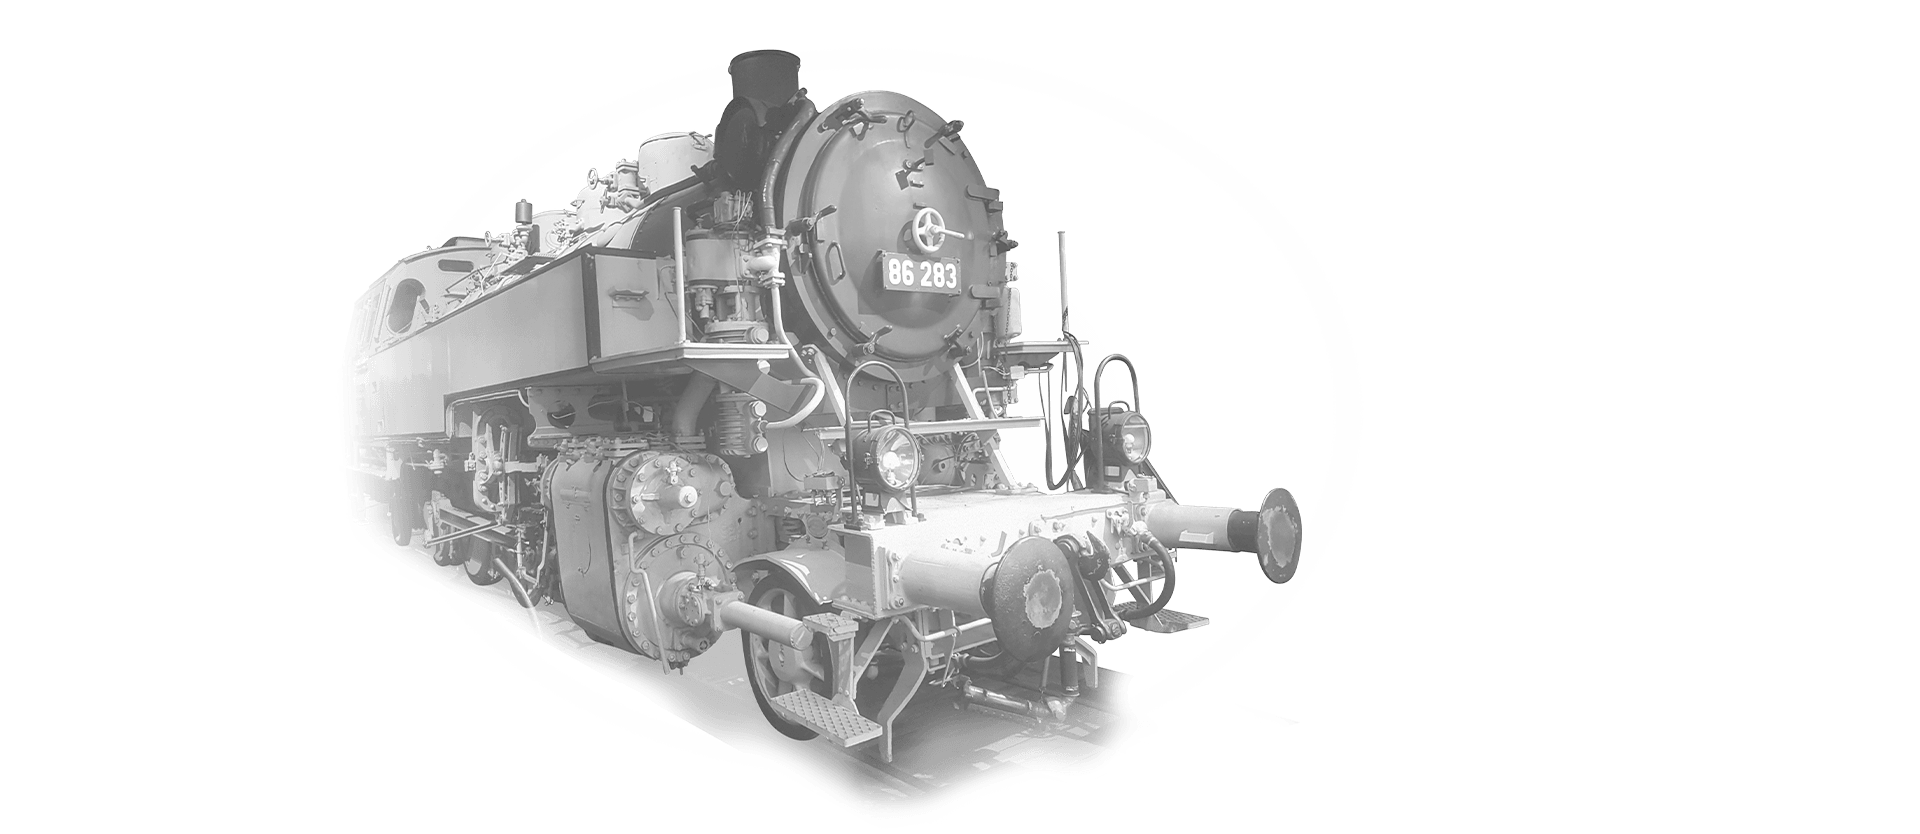 Lok 86-183 in schwarz-weiß fährt auf die Kamera zu